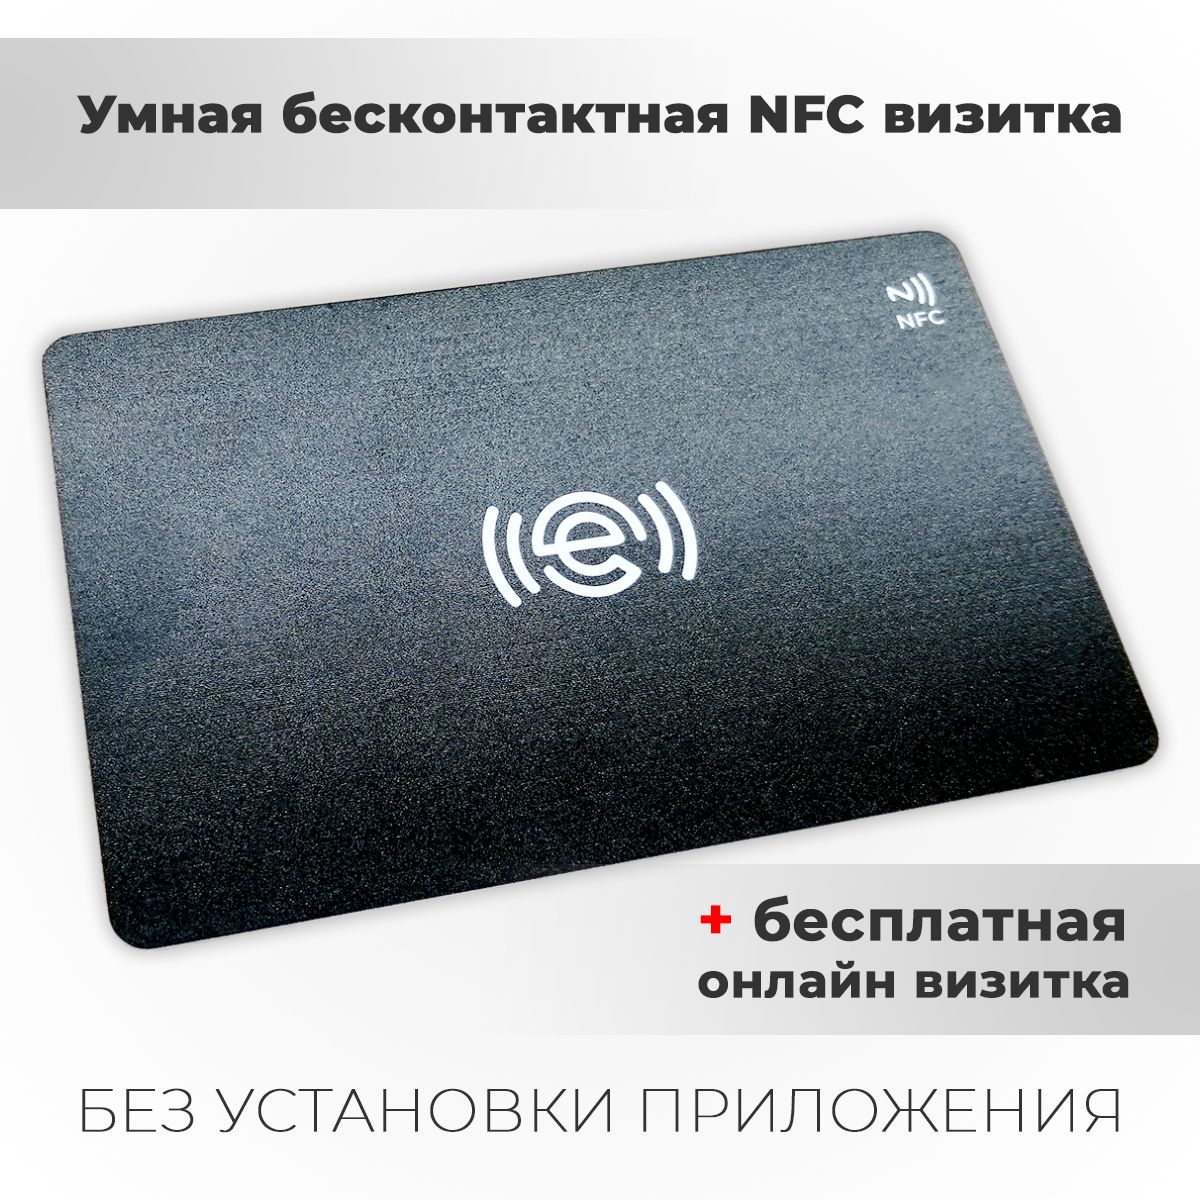 Телефон электронная визитка. Электронная визитка. Цифровая визитка. Умная визитка NFC. Электронная визитка пример.